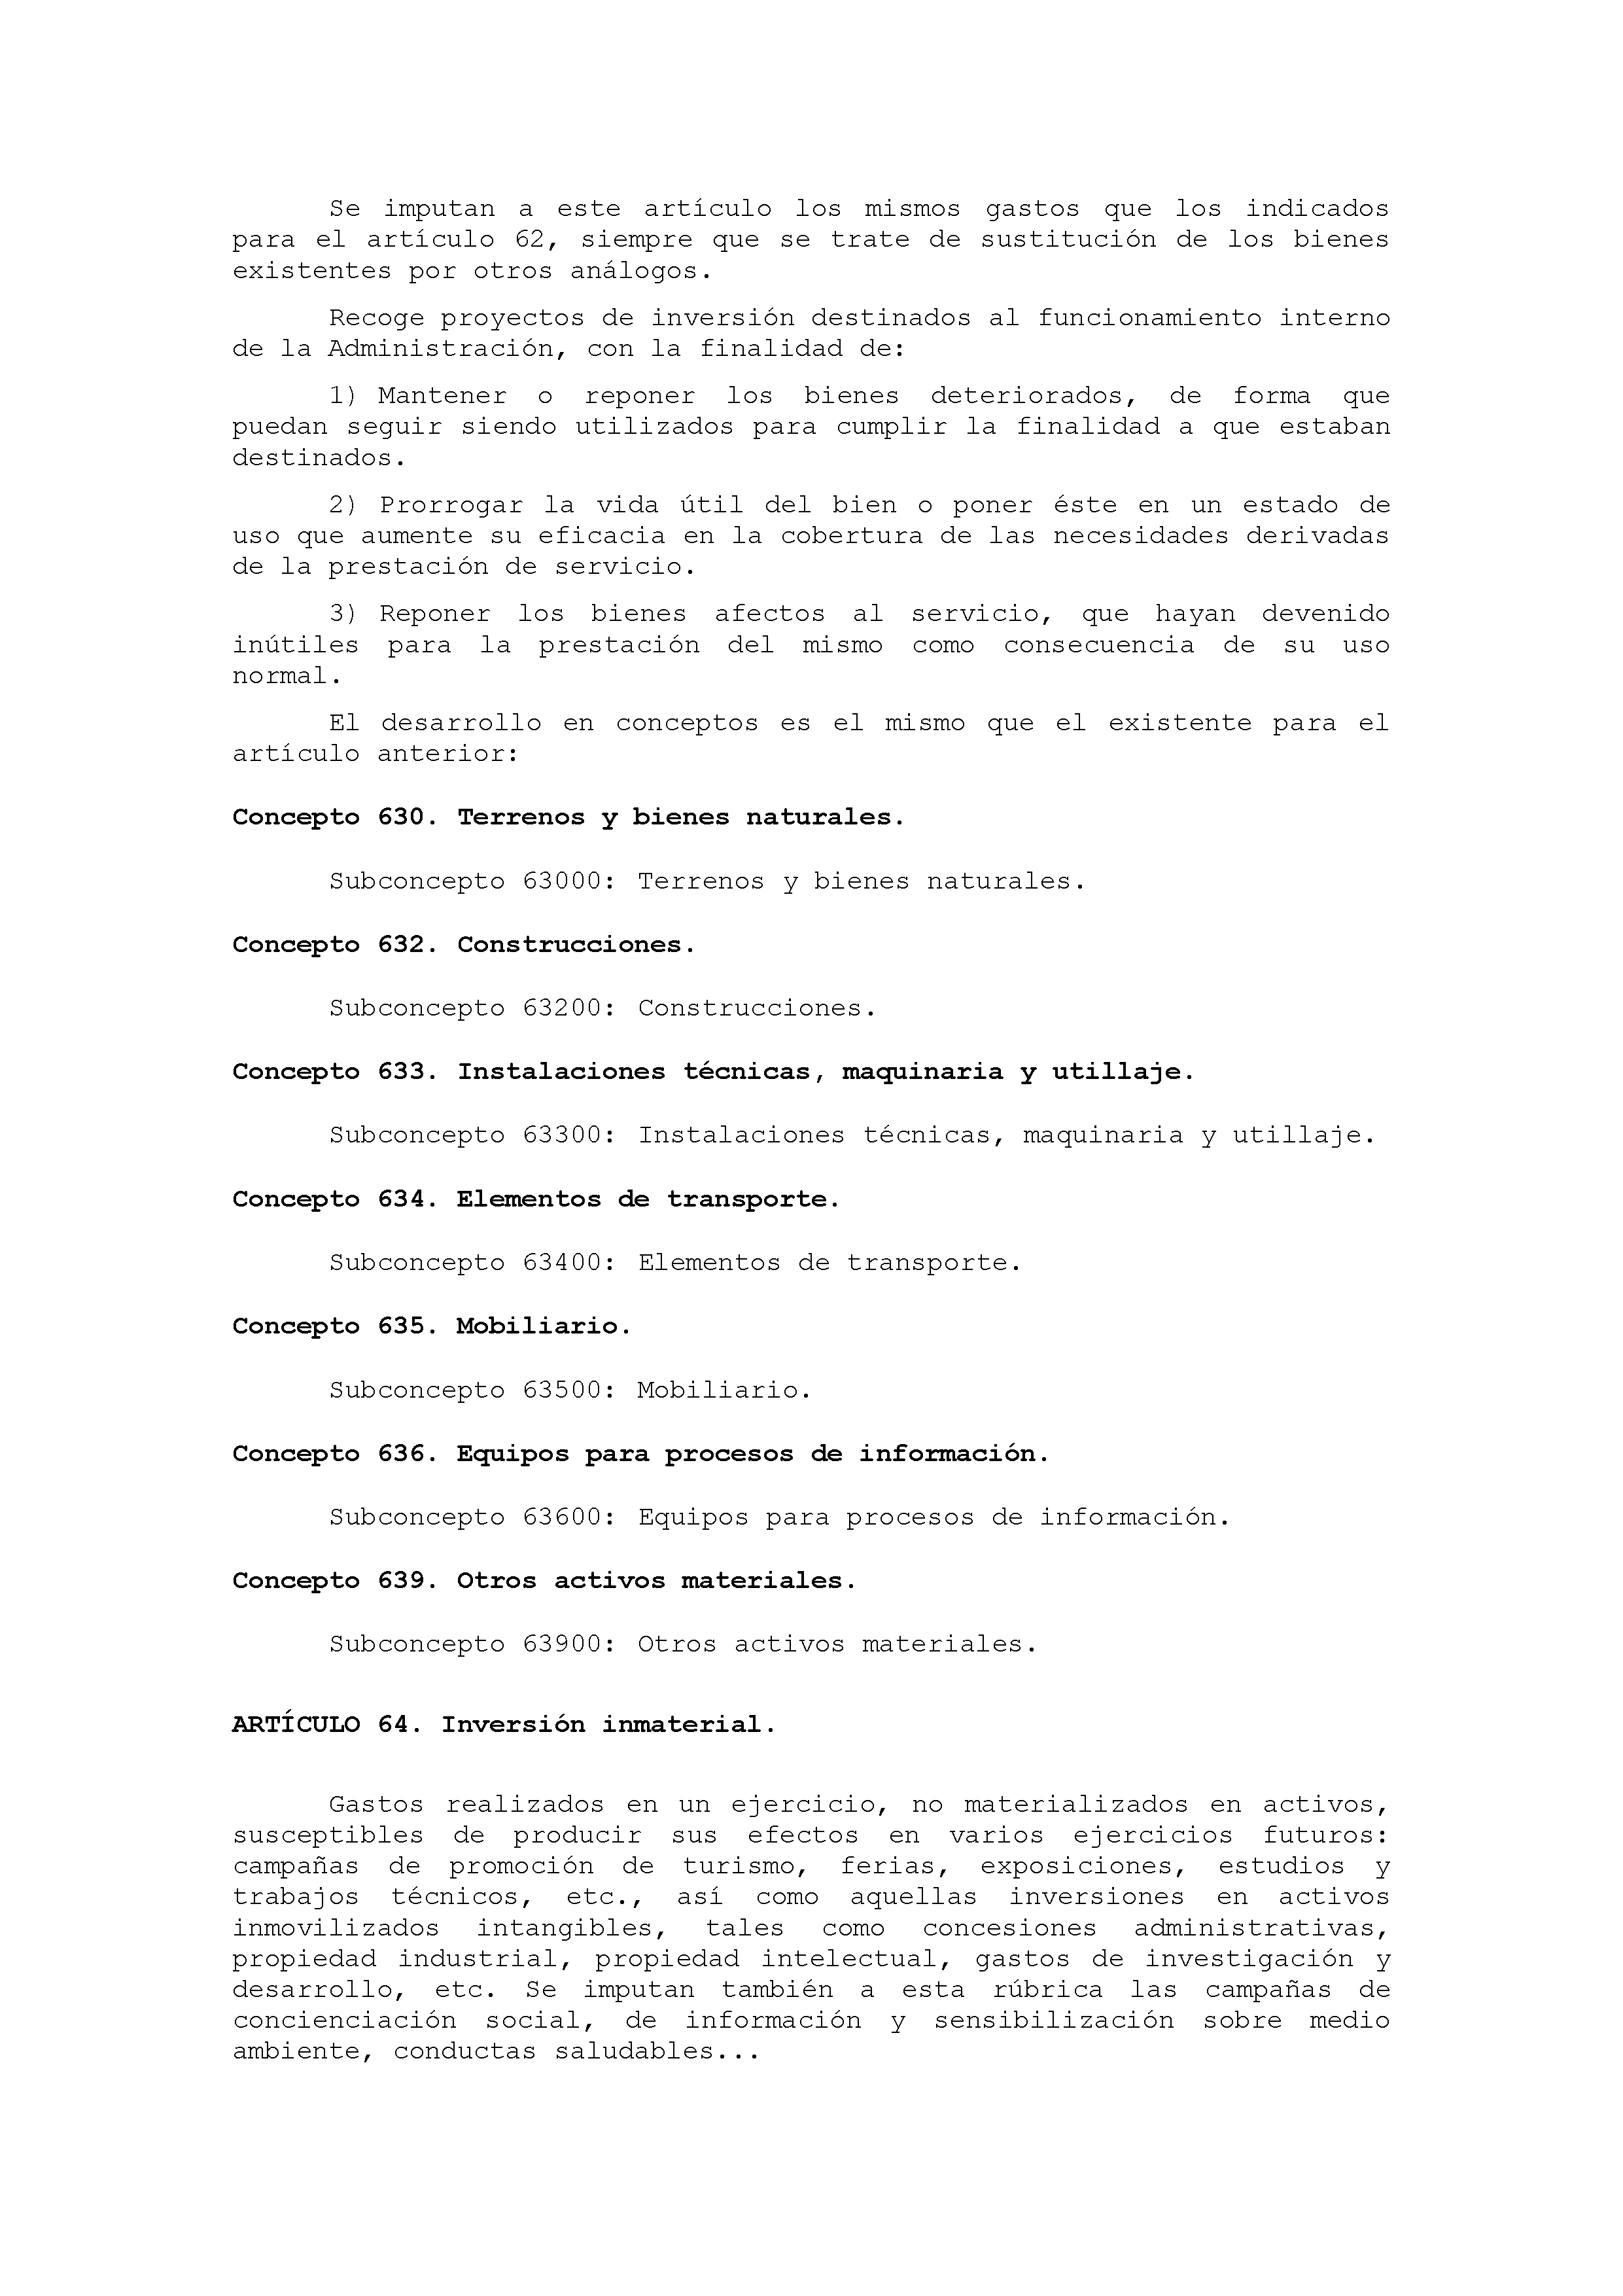 ANEXO IX CÓDIGO DE LA CLASIFICACIÓN ECONÓMICA DE LOS GASTOS PÚBLICOS Pag 38